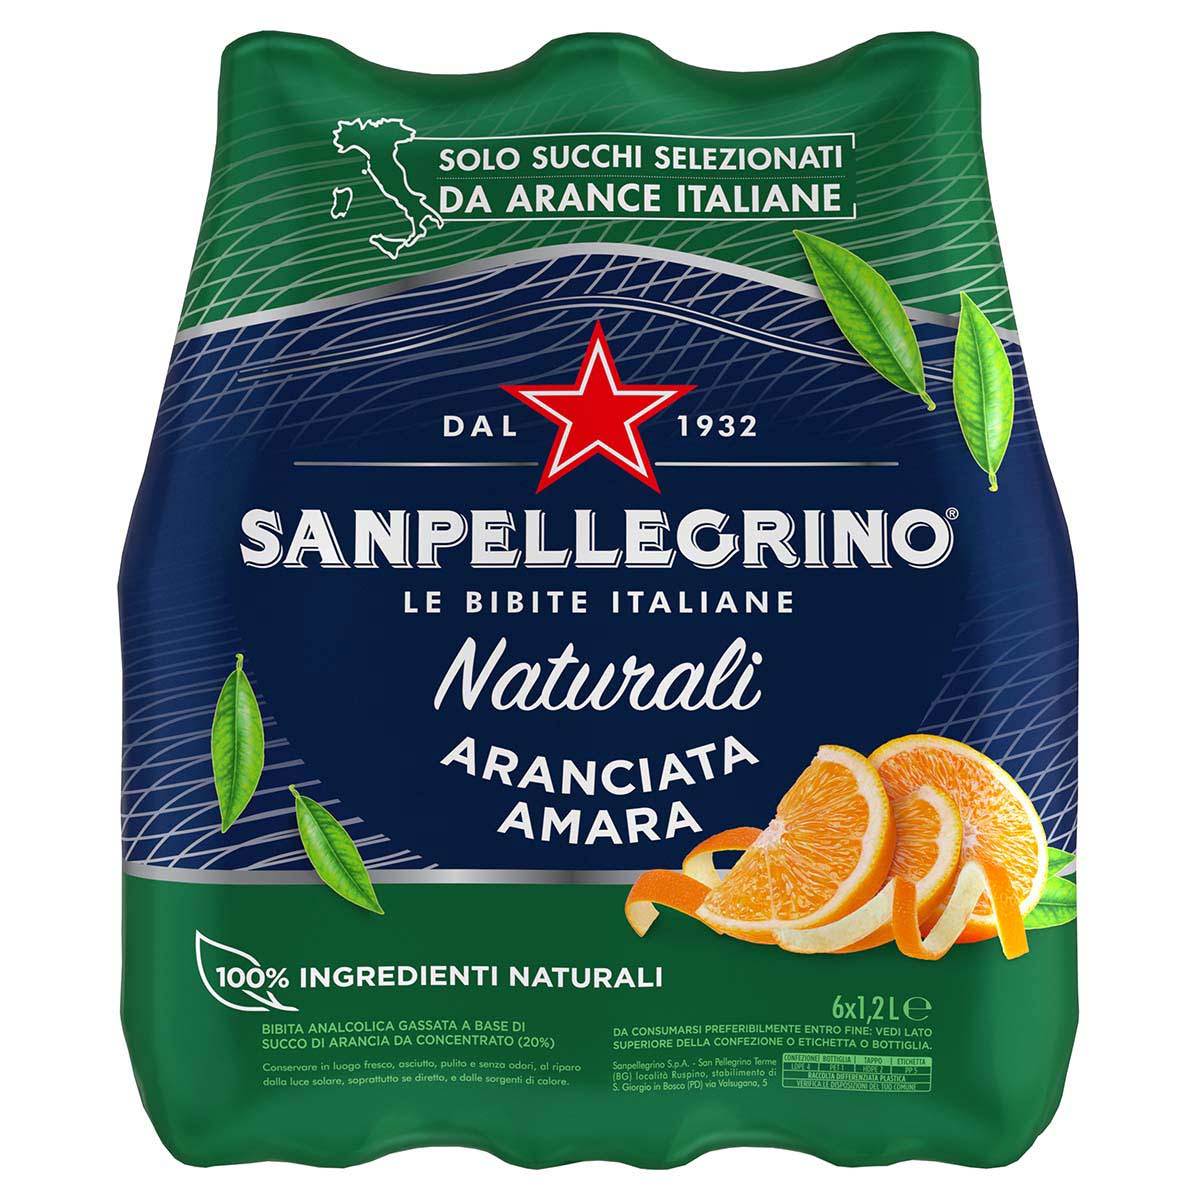 Aranciata Amara Naturali Sanpellegrino PET 6x120cl